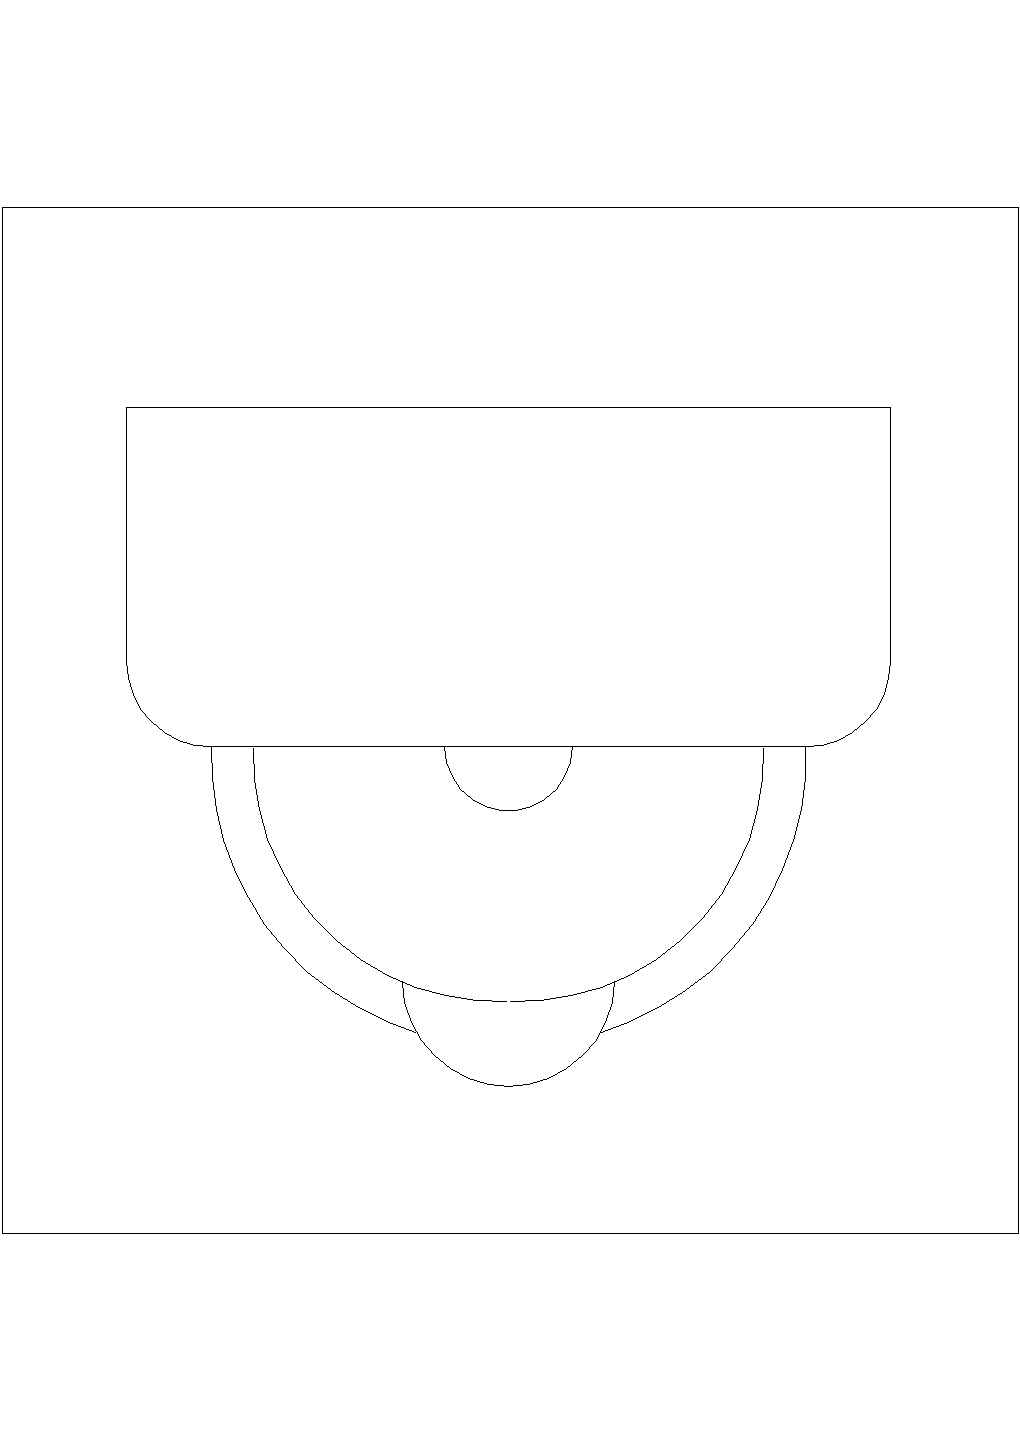 某小便斗平面CAD节点平立剖构造图纸